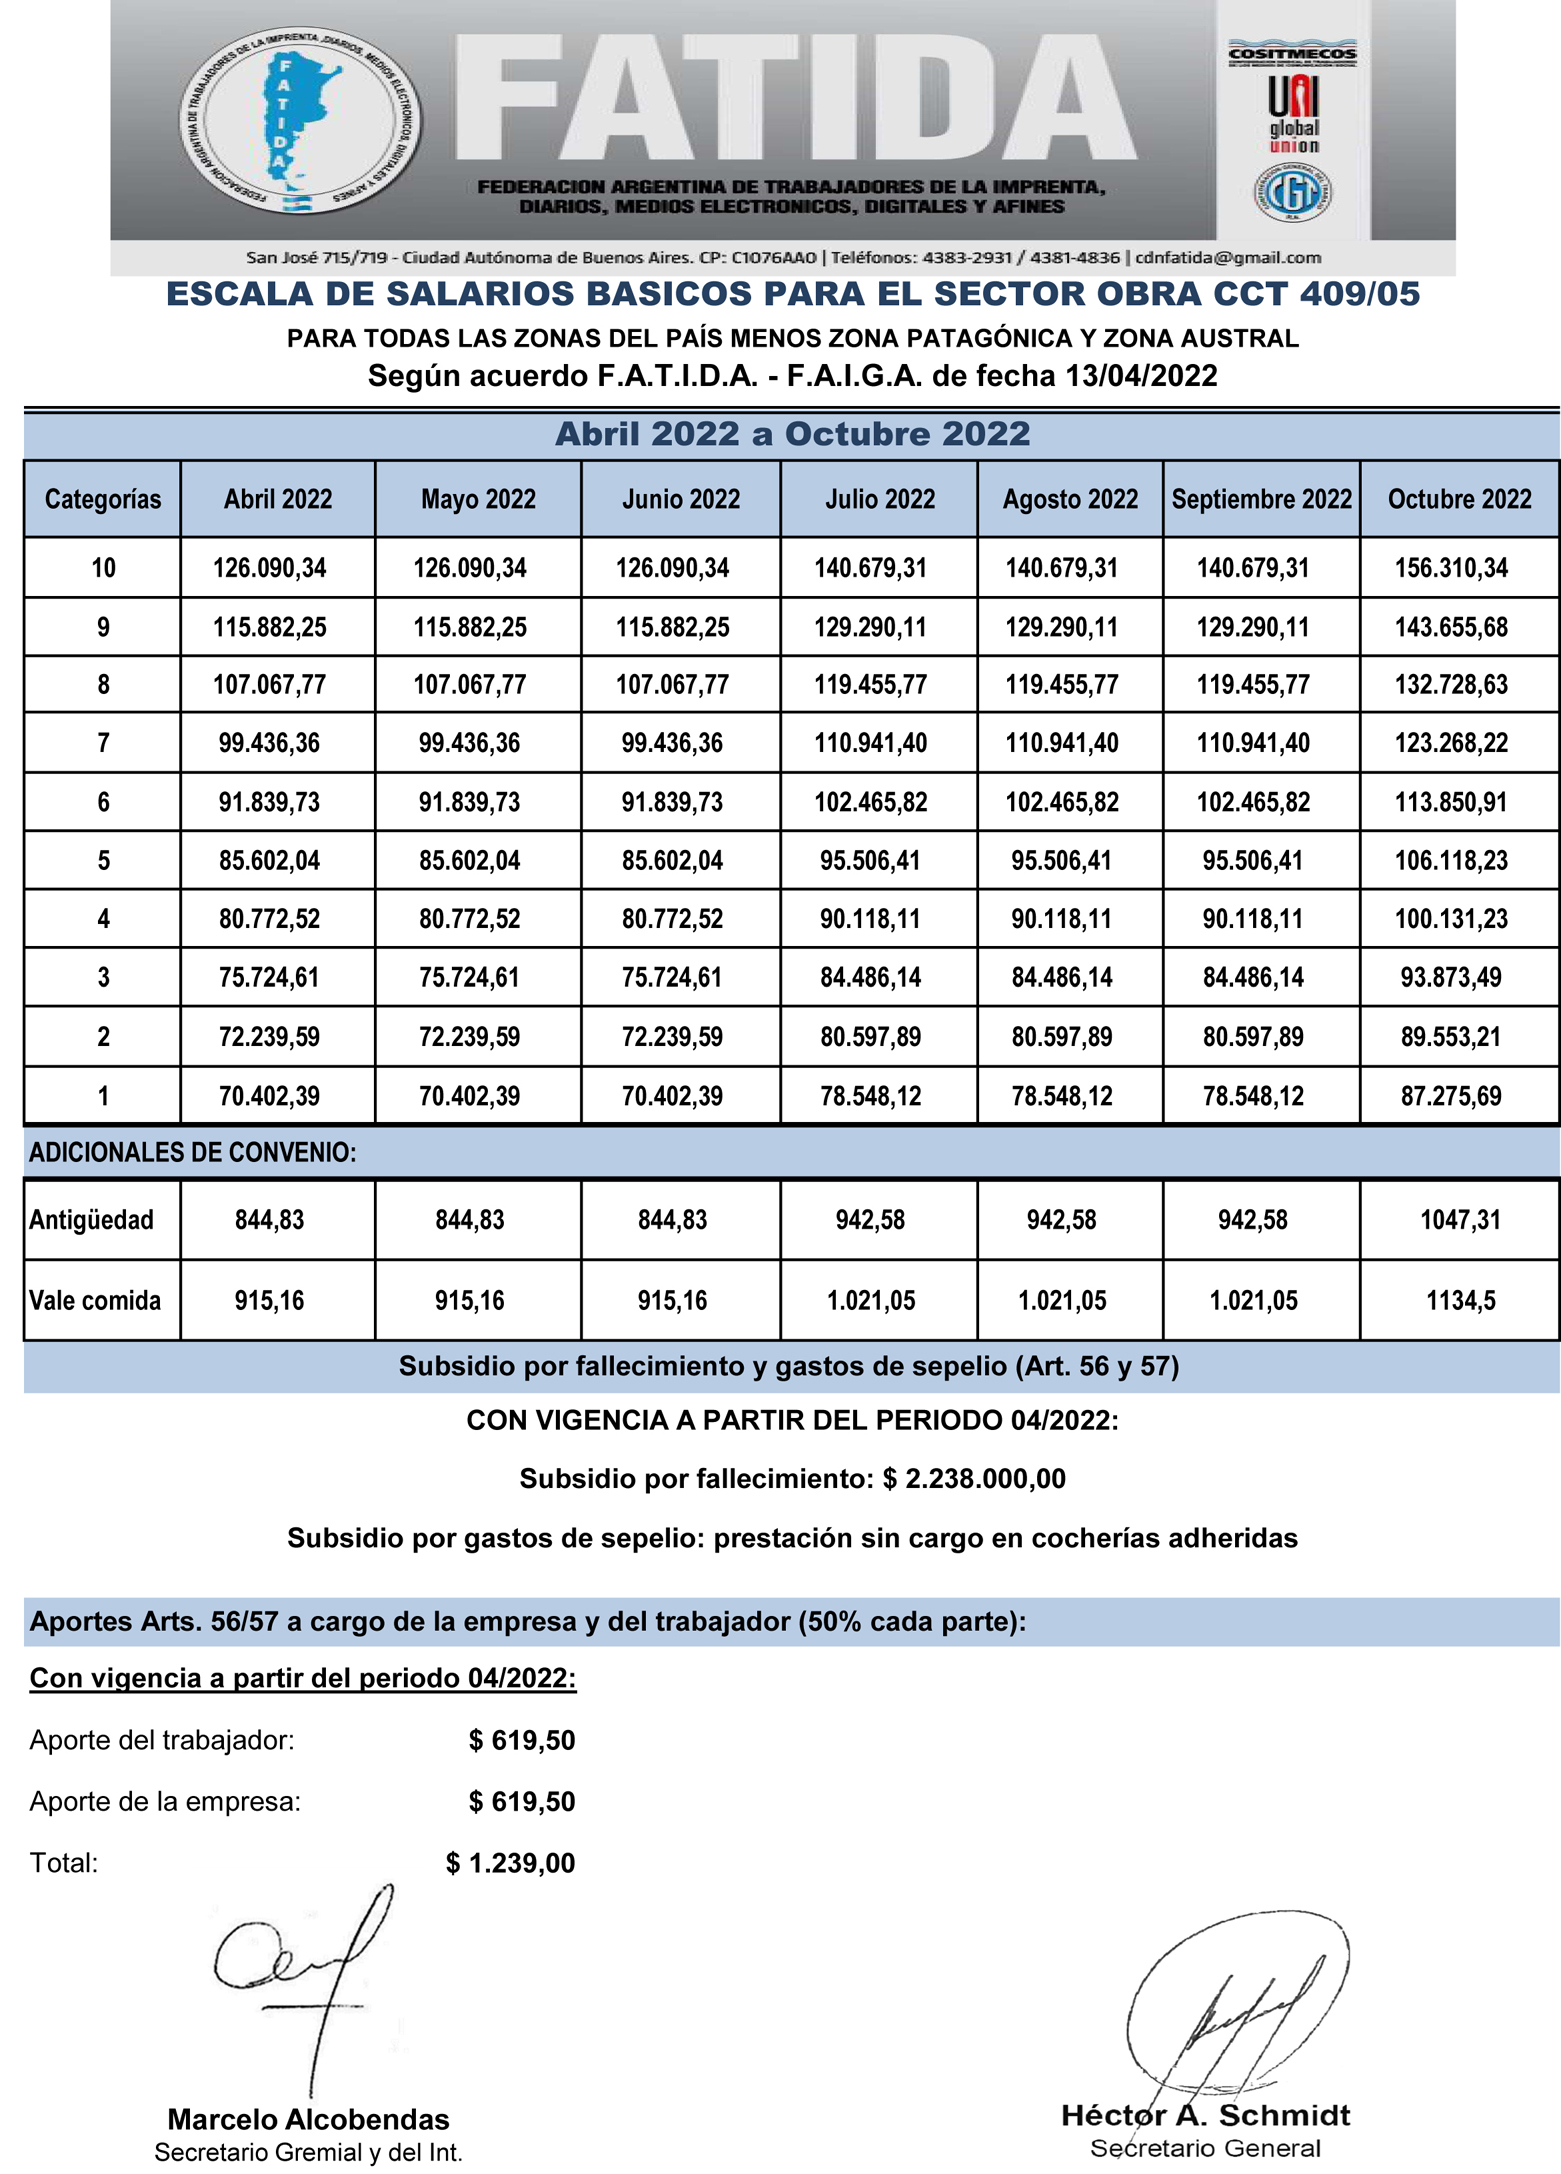 Escala Salarial – Obra – Abril a Octubre 2022 (Todas las-zonas menos Patagónica y Austral)